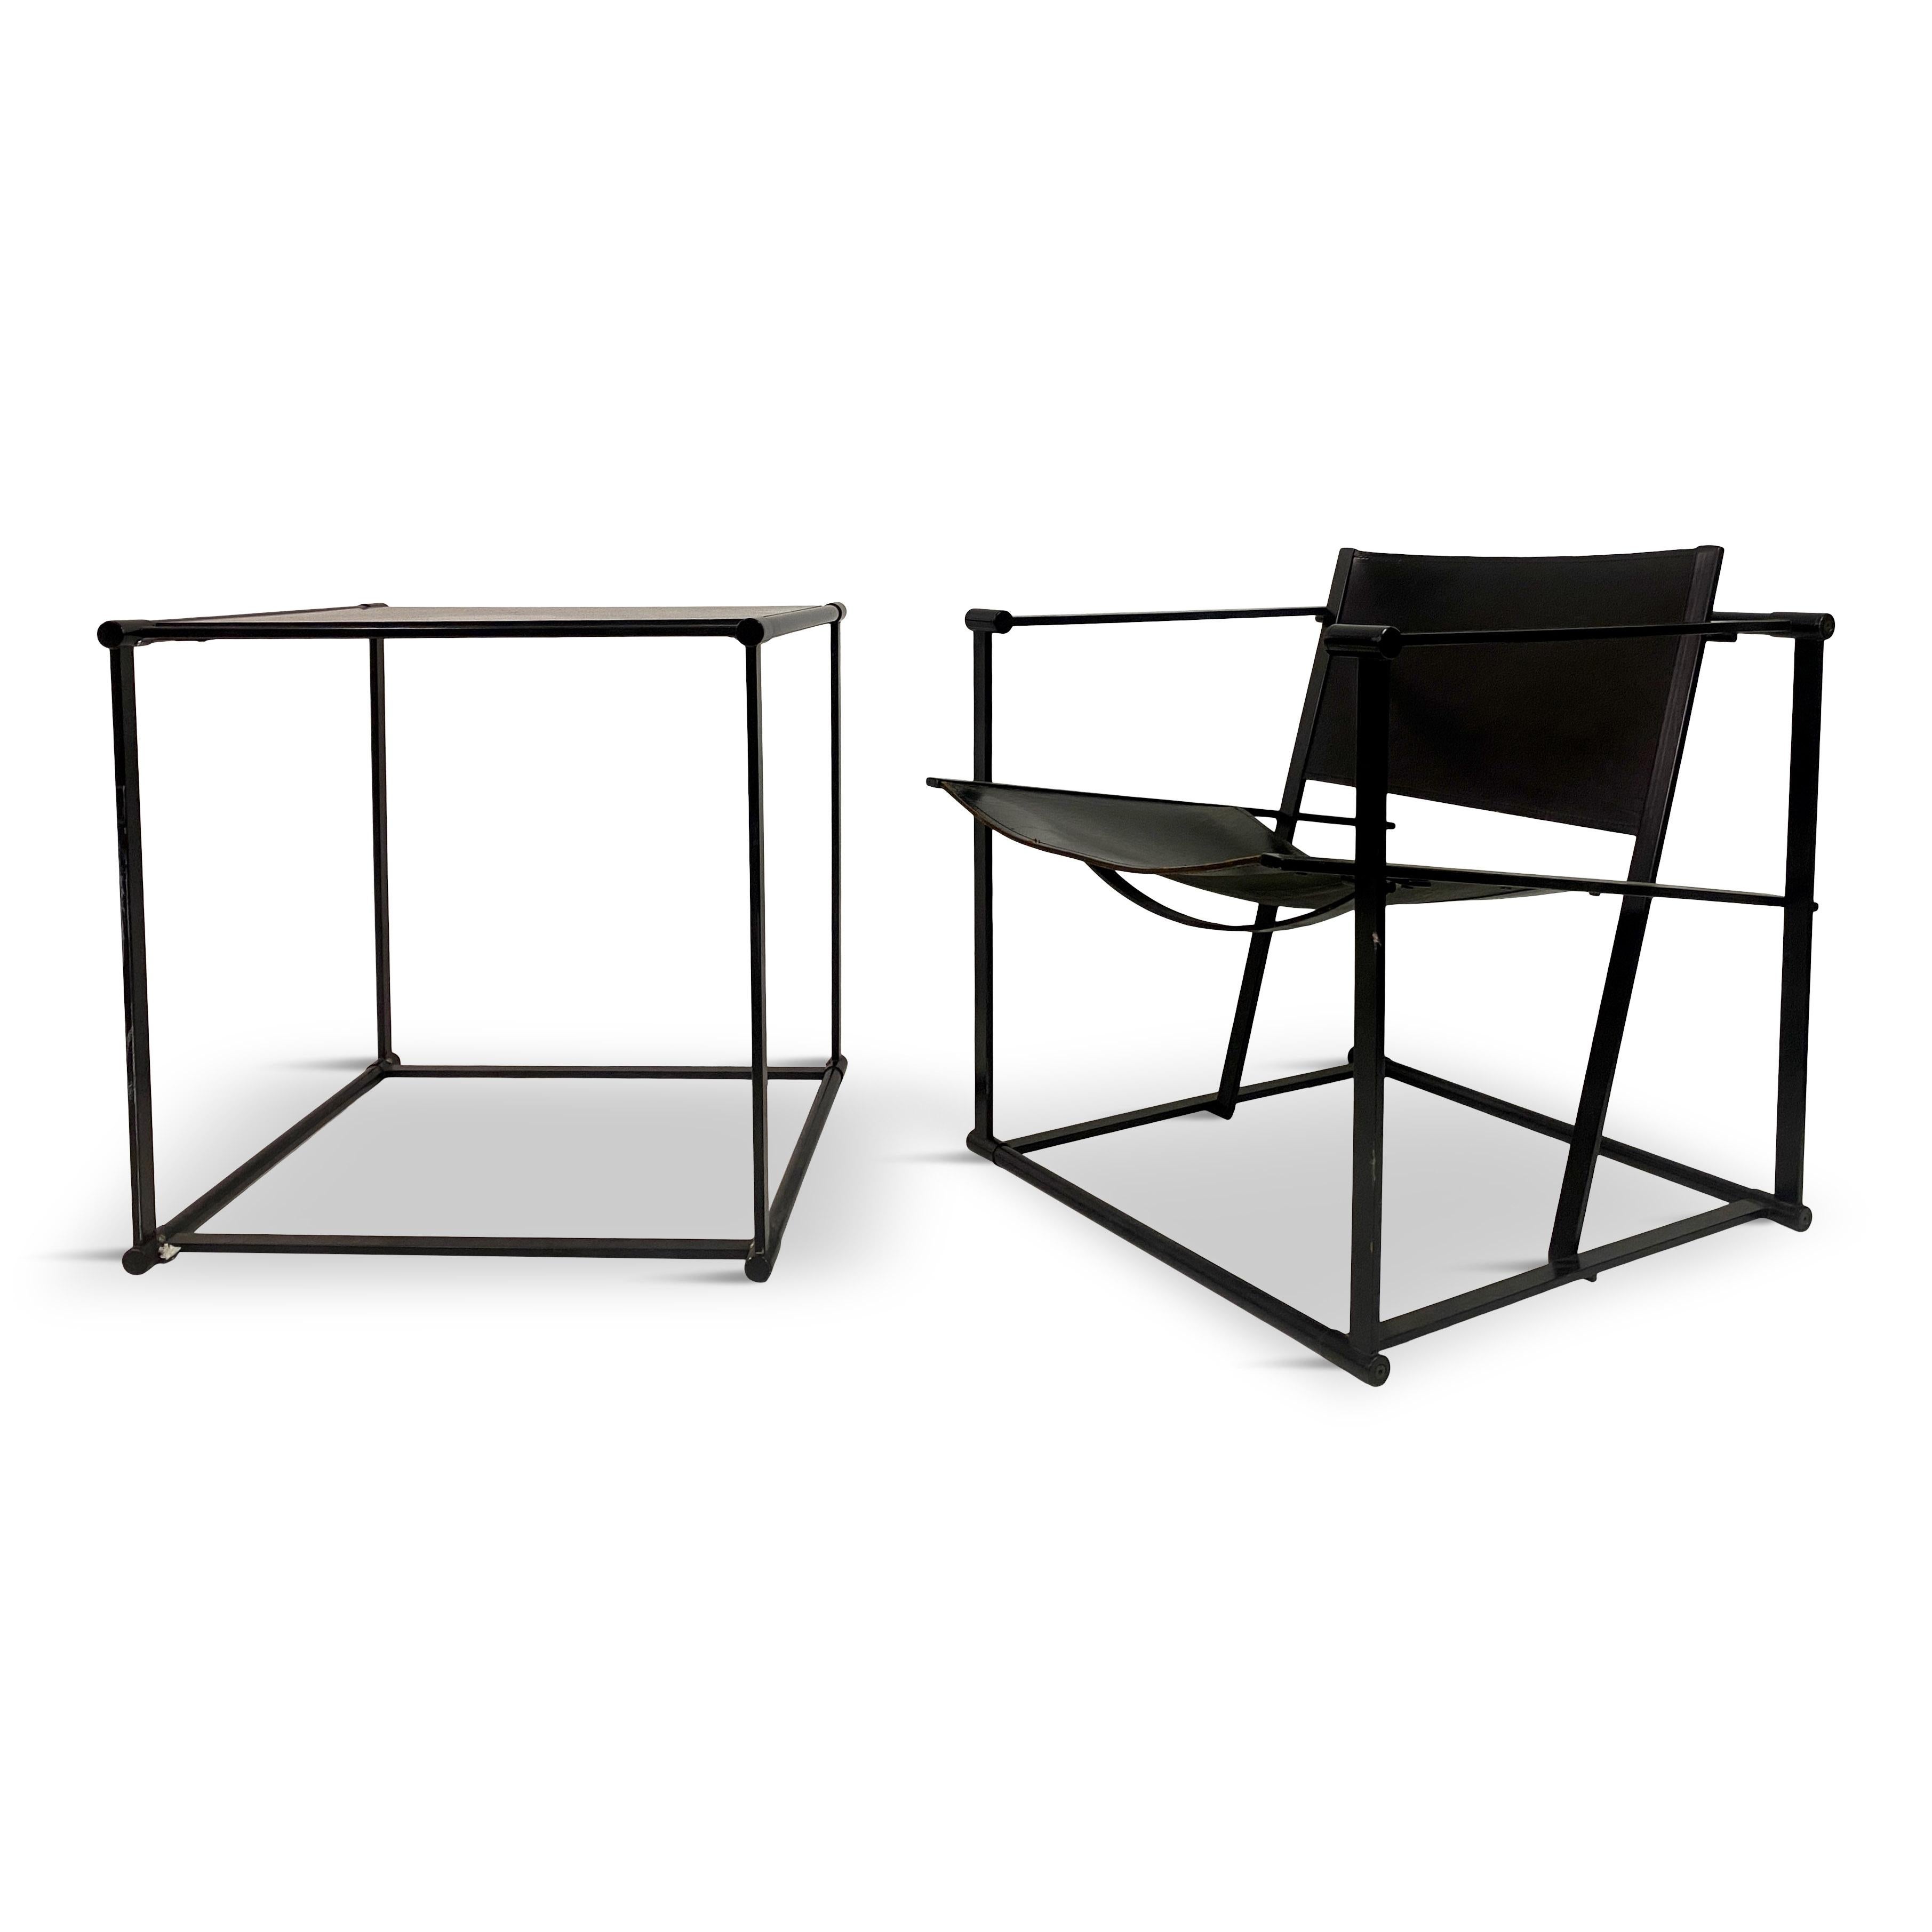 Cube Lounge Chair und Tisch, entworfen von Radboud Van Beekum für Pastoe, Niederlande, 1980er Jahre. 

Der Sessel und der Tisch haben einen starken, geometrischen Charakter. Die Serie FM60 steht in der Tradition der De Stijl-Bewegung und ist von den